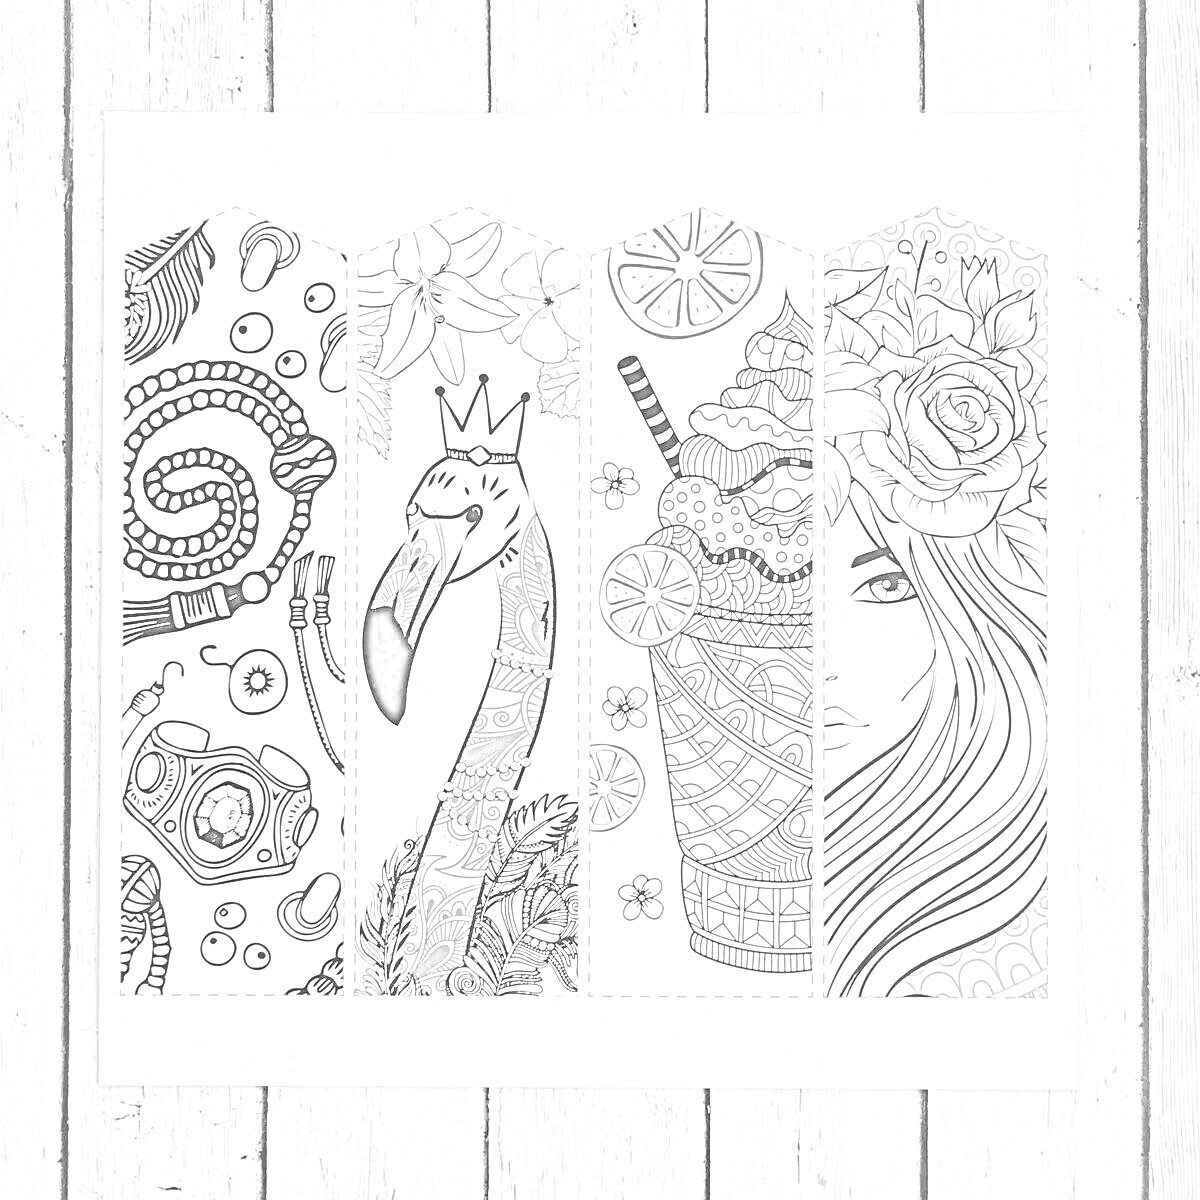 Раскраска Антистресс раскраска с узором спирали, цветами, коронованным фламинго, коктейлем с слайсами фруктов и дольками лимона, элементами музыки и половиной лица девушки с длинными волосами и цветком в волосах.